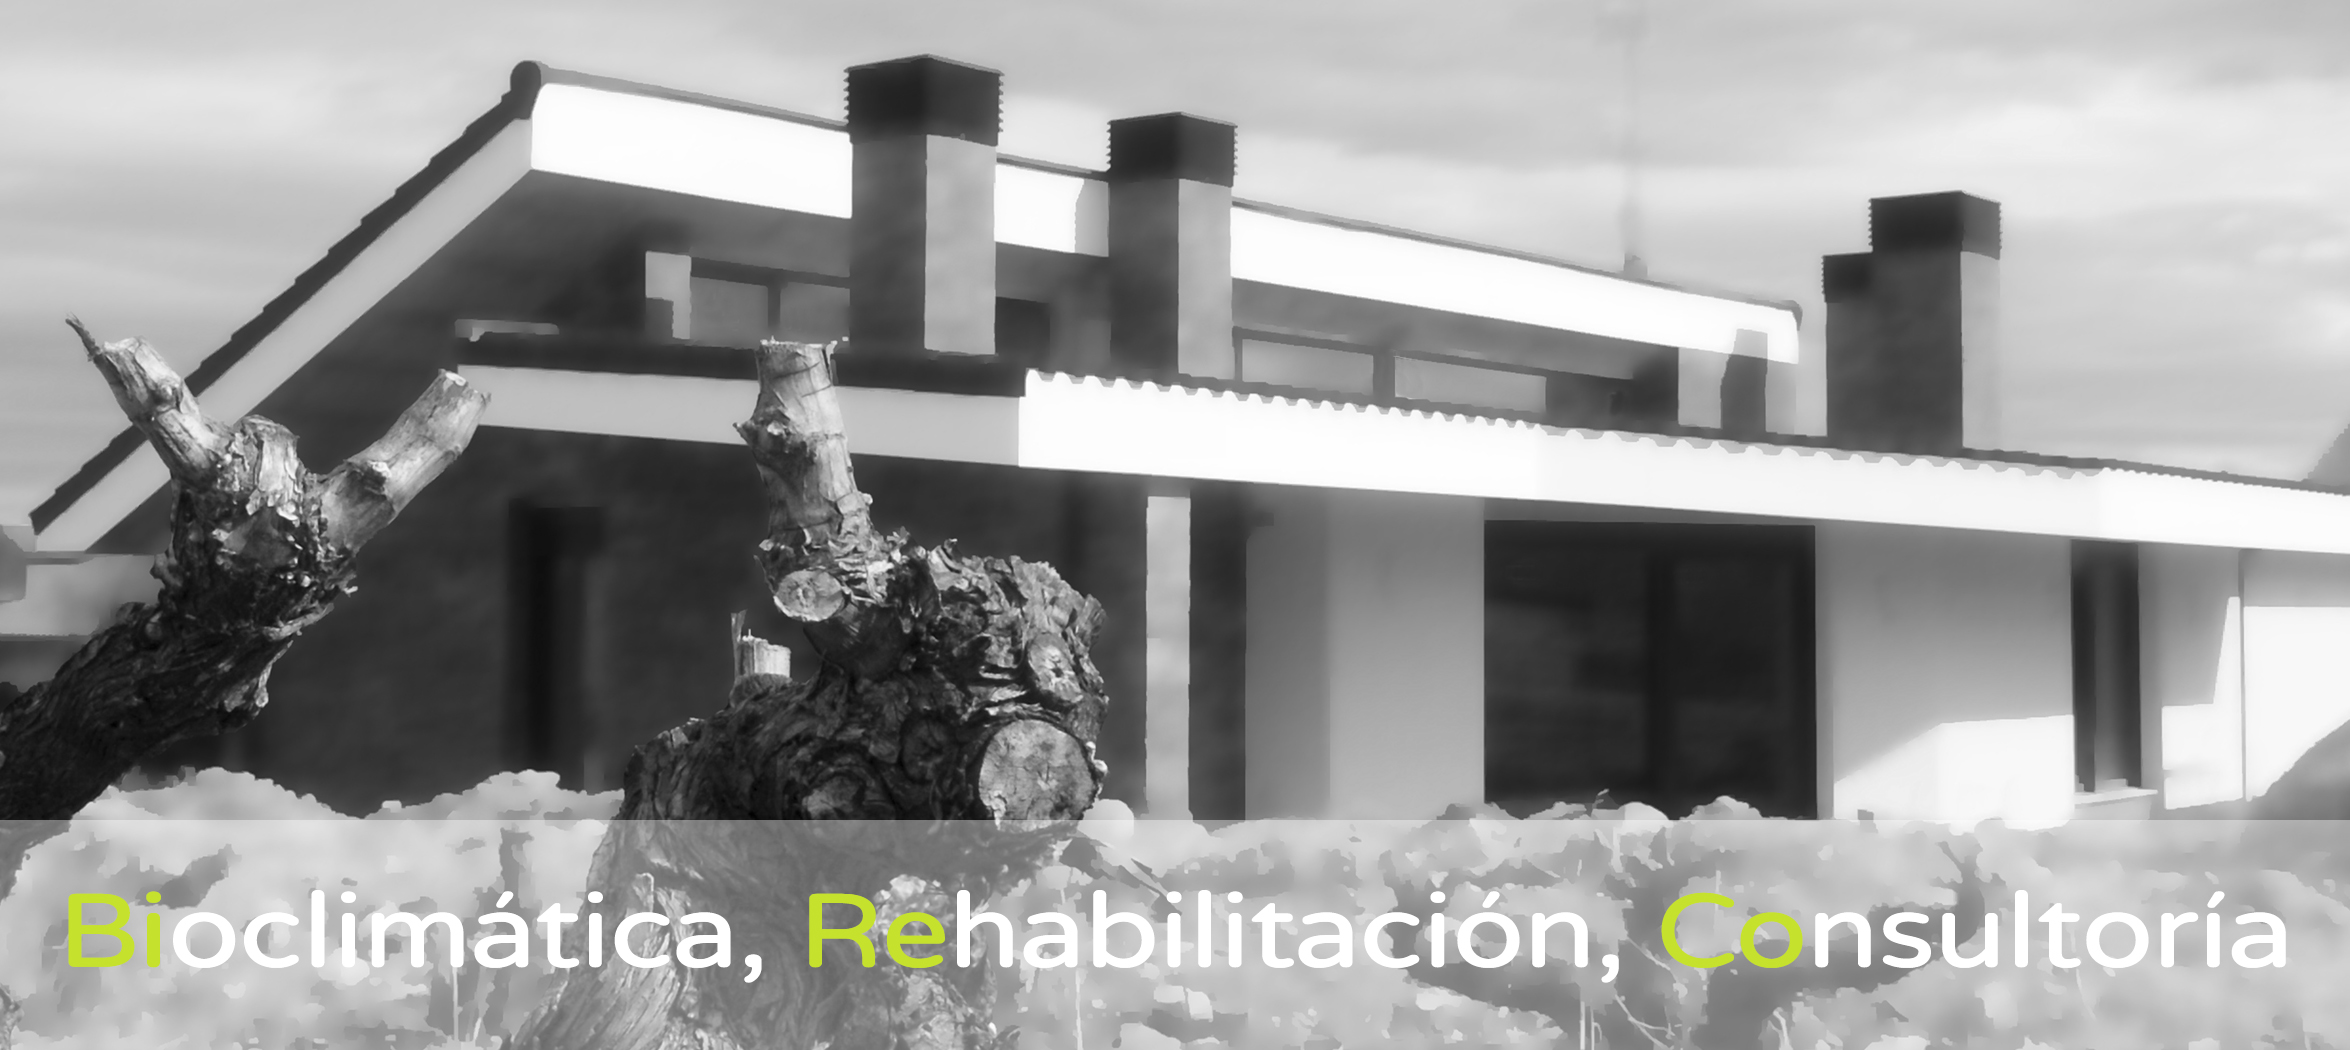 BiReCo-estudio de arquitectura-bioclimatica-rehabilitacion-casa pasiva-sostenible-eficiente-verde-energia_casi_nula-ahorro